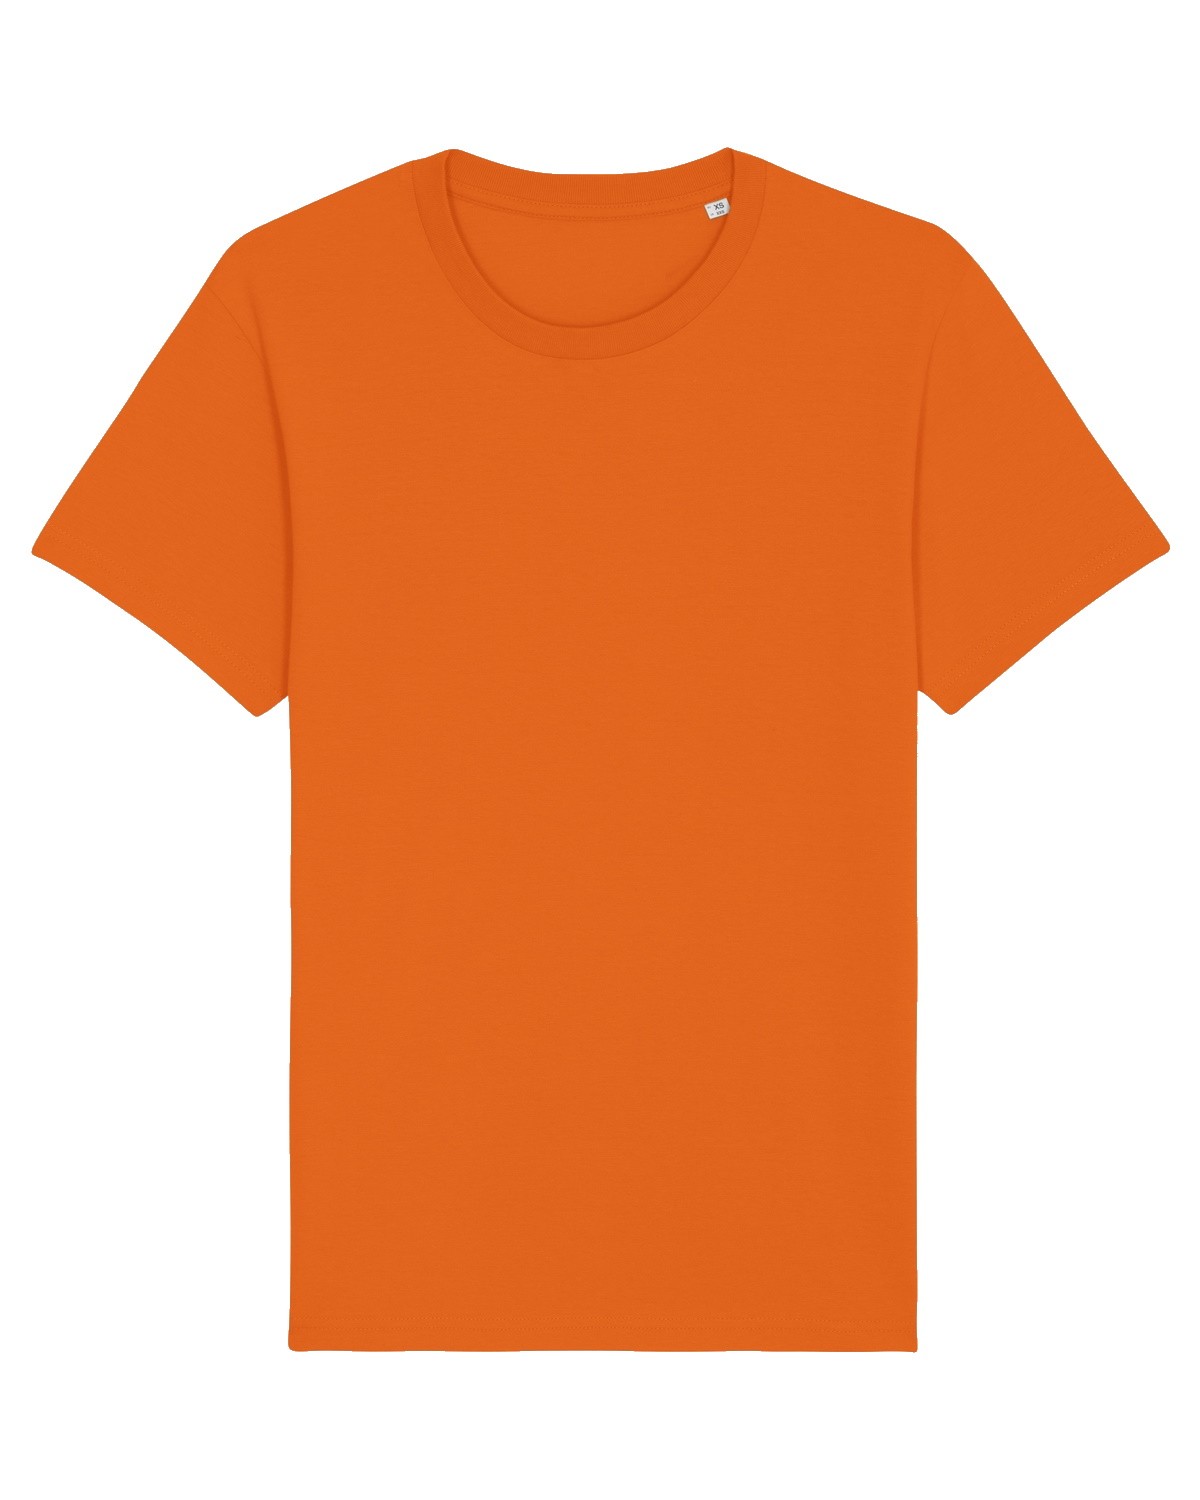 Camiseta Personalizada Mujer Color Naranja